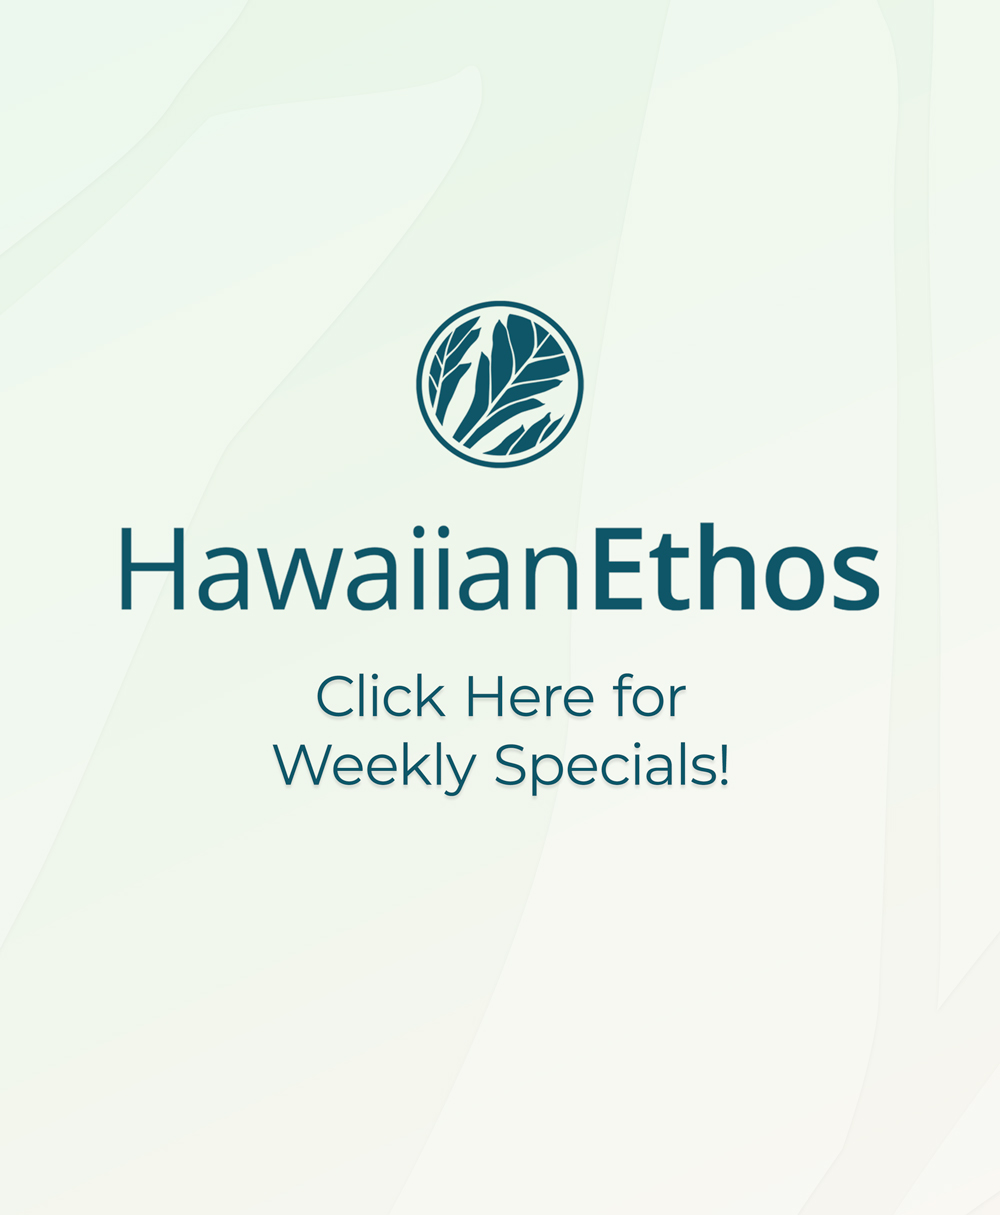 Hawaiian Ethos Waimea Specials